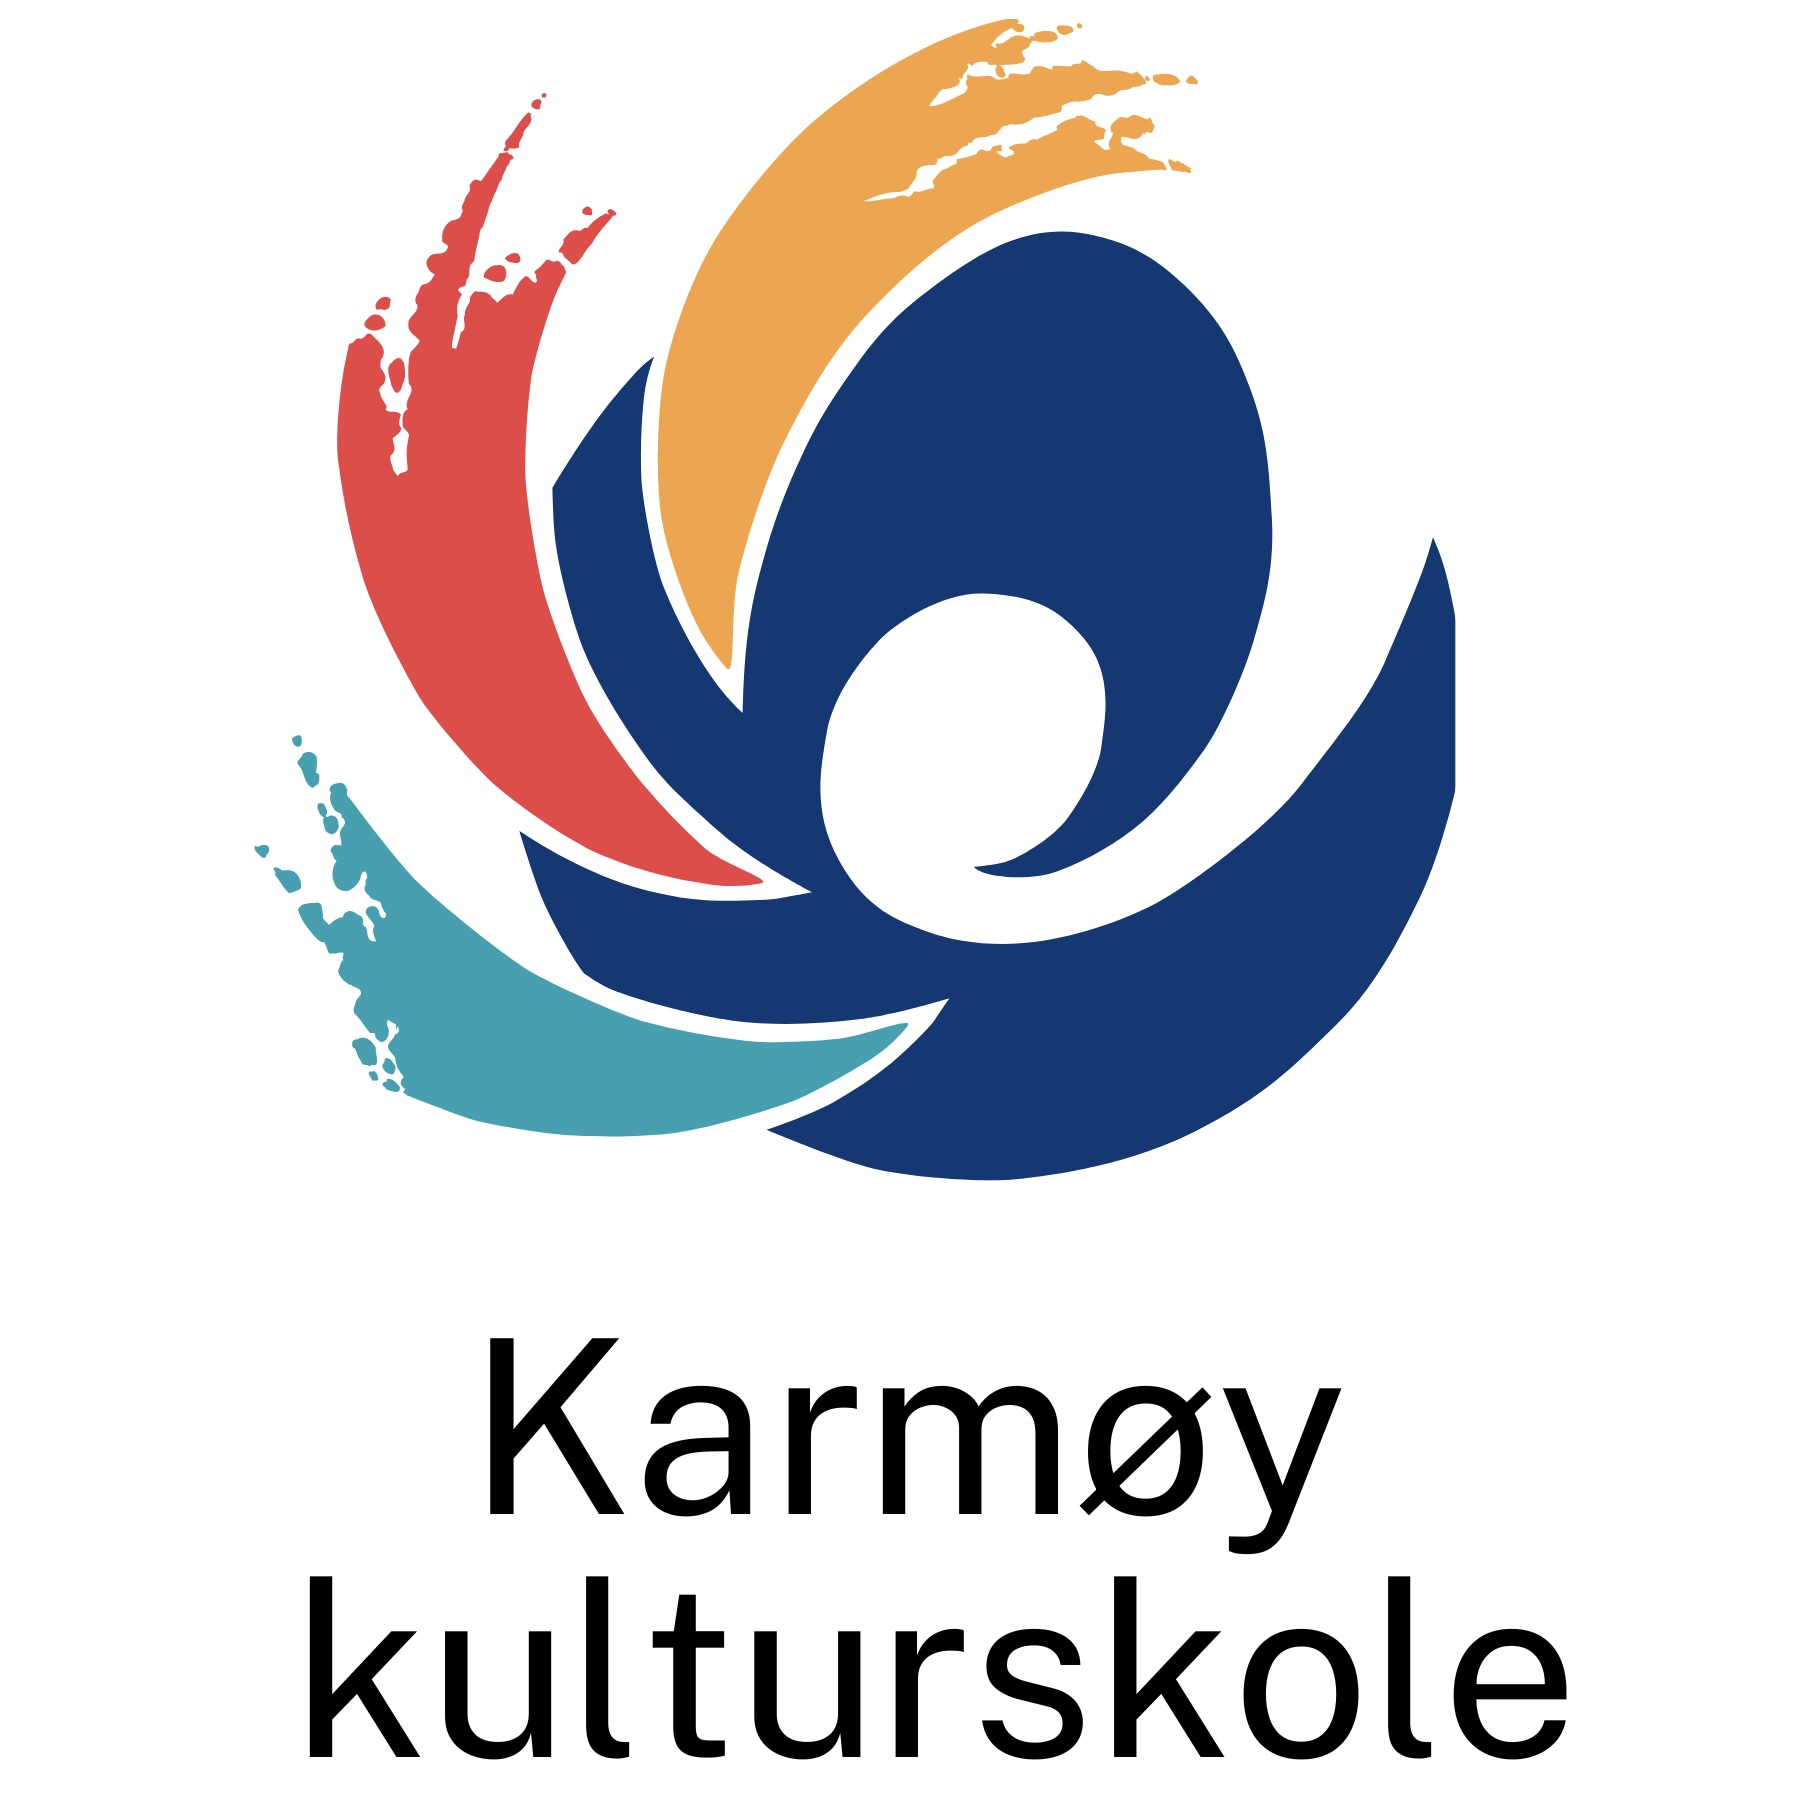 Karmøy Kulturskole Logo